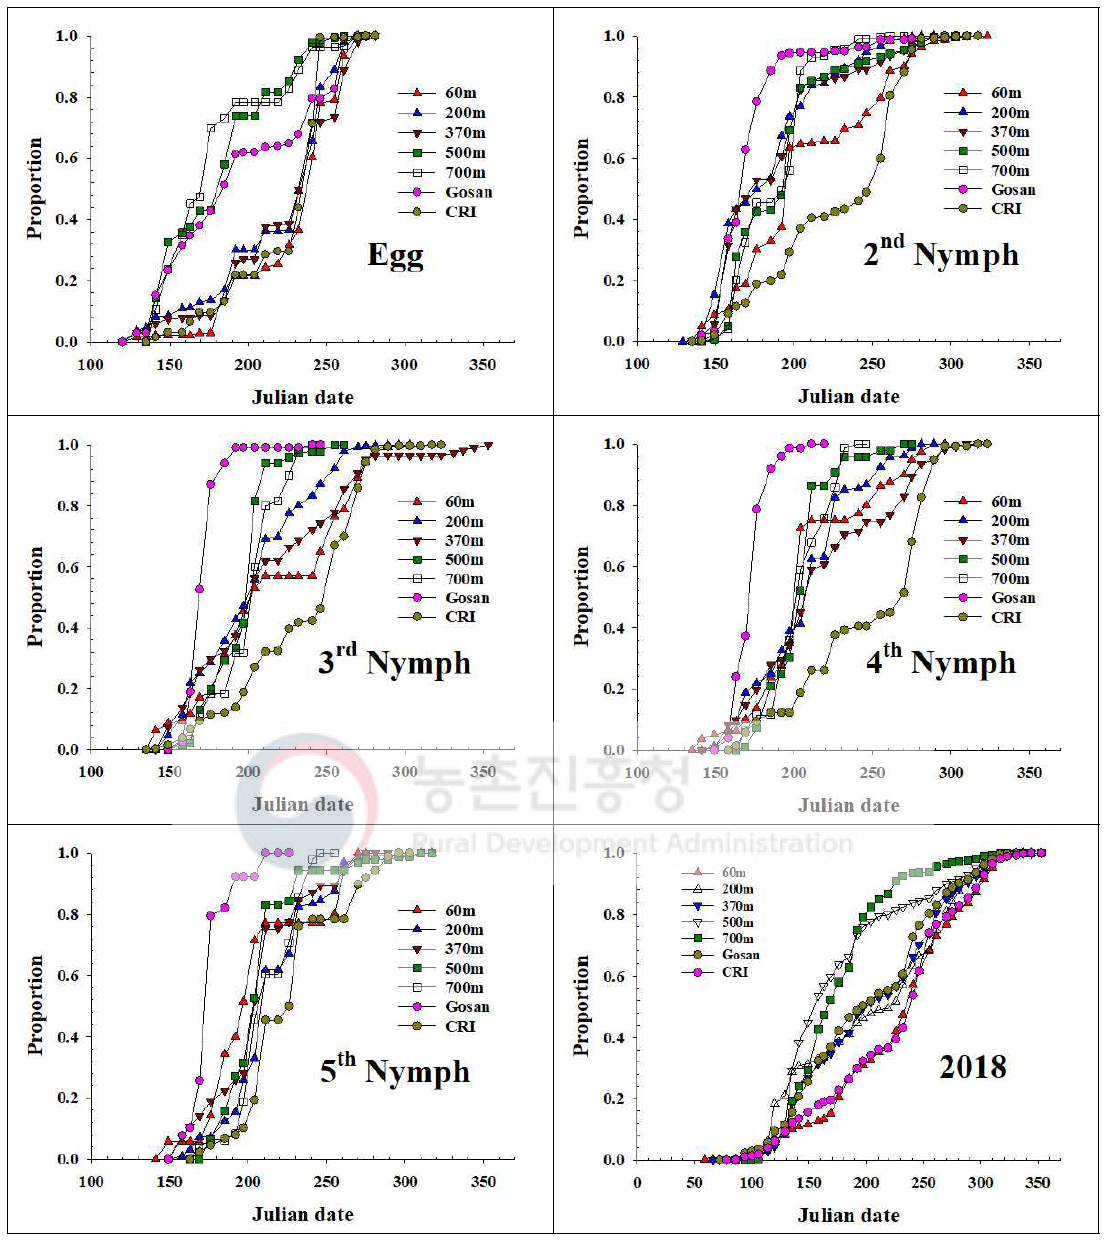 제주지역 톱다리개미허리노린재 발육단계별 개체수 누적증가 지역간 비교(2018)